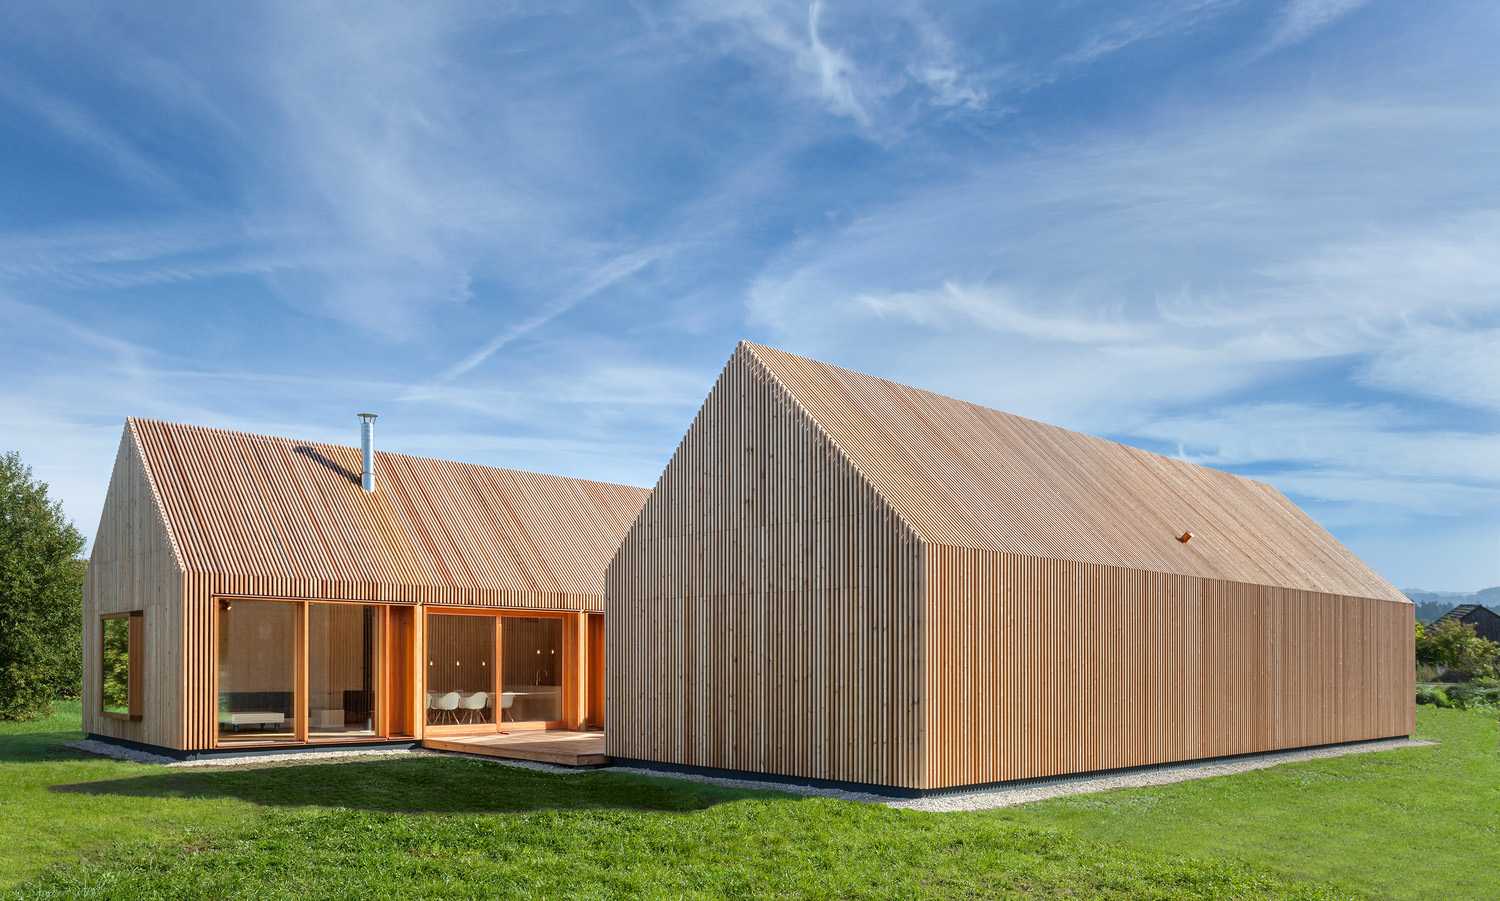 Diseño minimalista para una casa de madera. Armonía entre la madera de alerce exterior y el paisaje